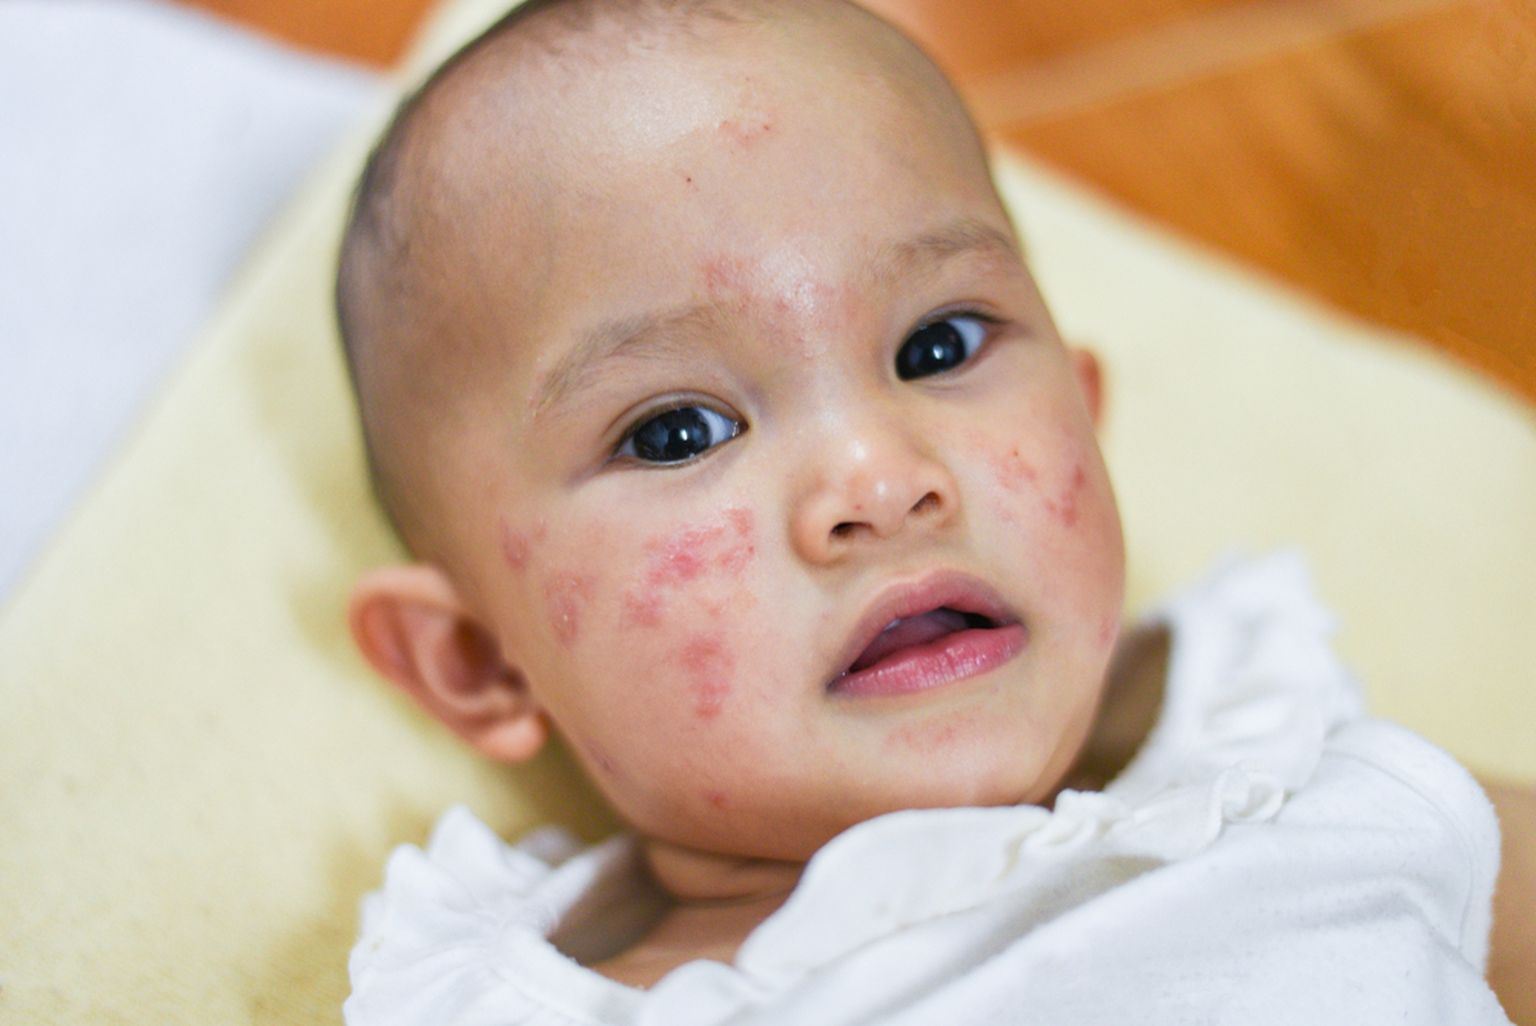 Toitumisteadlane selgitab: lastel esinevad allergiad, mis on põhjustatud toitudest